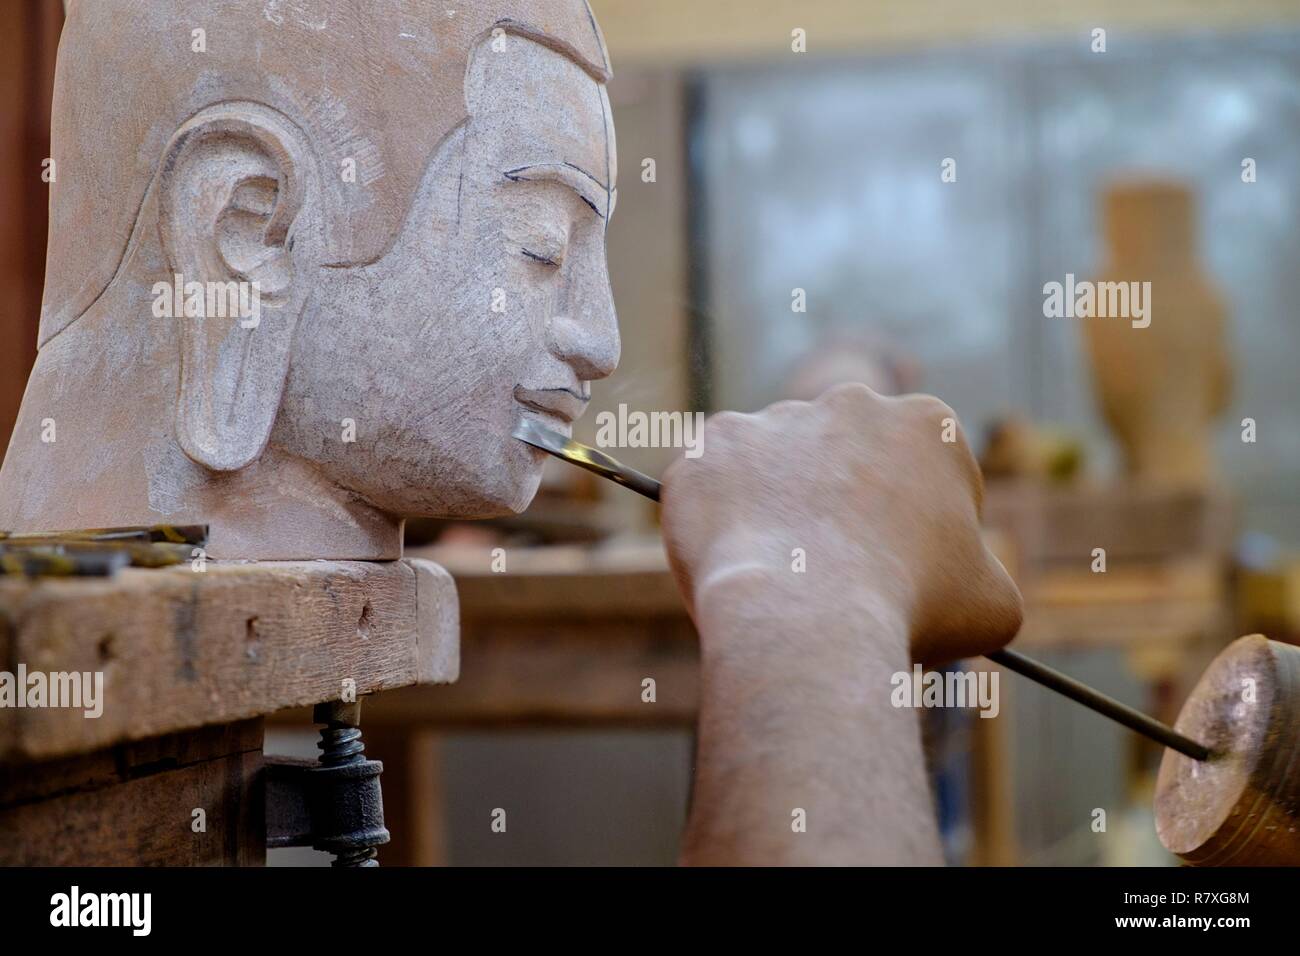 Kambodscha, Provinz Siem Reap, Angkor, Handwerk, Stein Skulptur eines Buddha Kopf Stockfoto